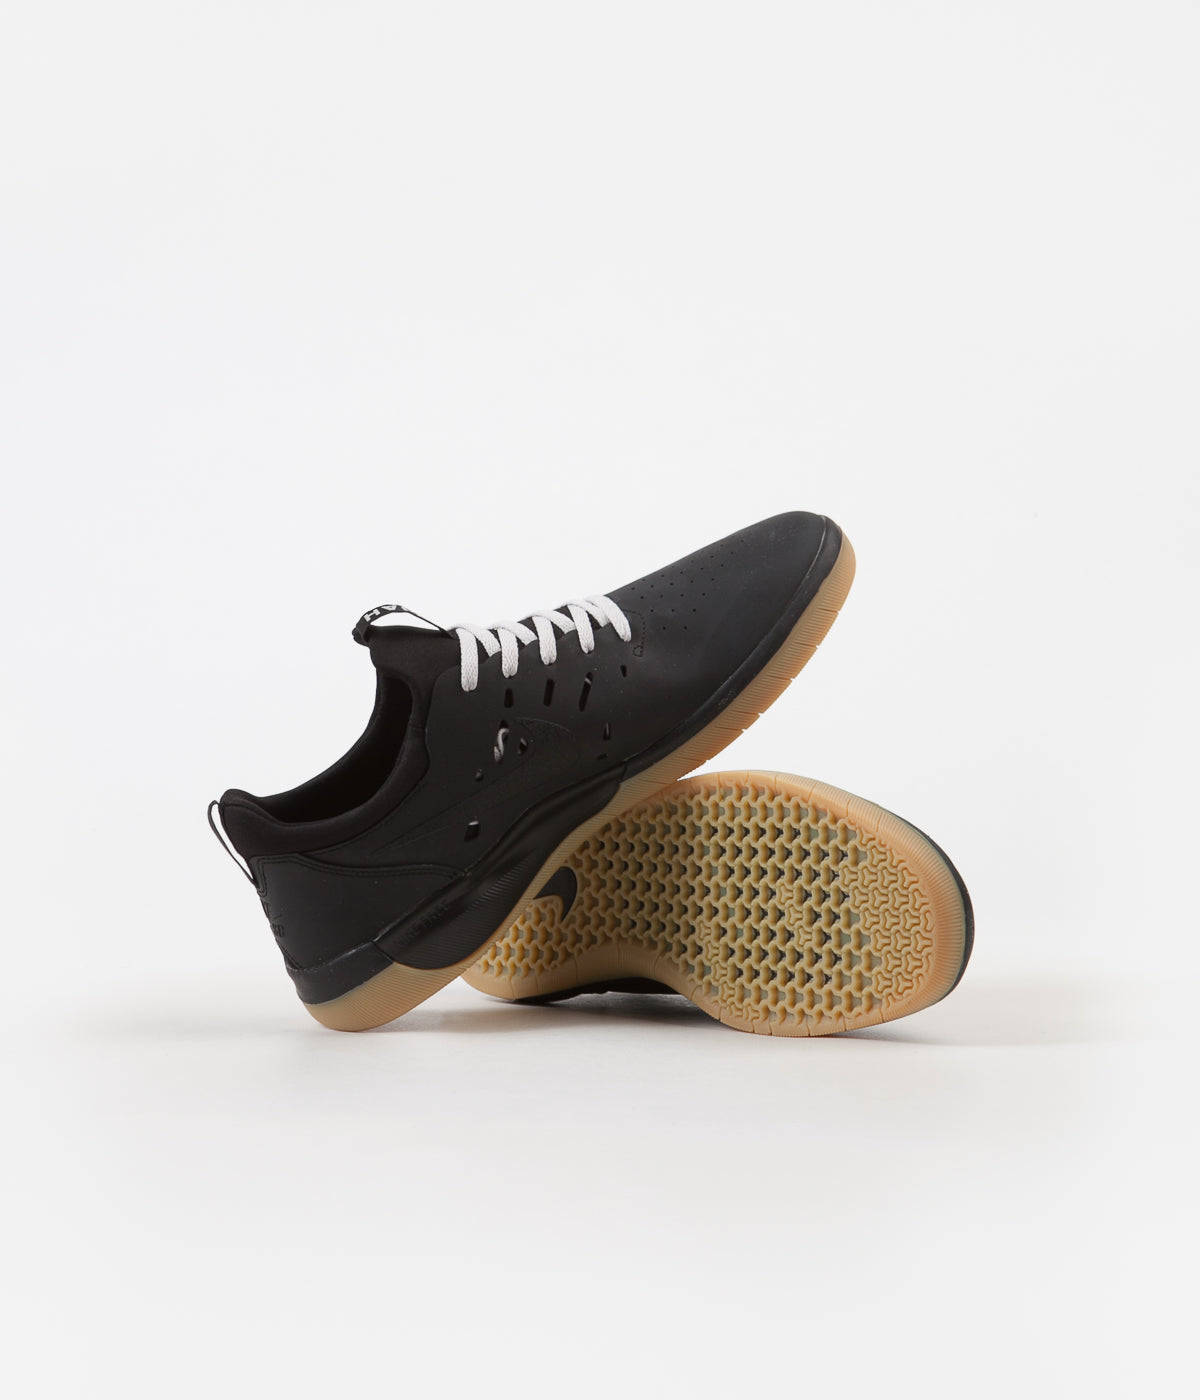 Nike SB Nyjah Free Shoes - Black / Gum 